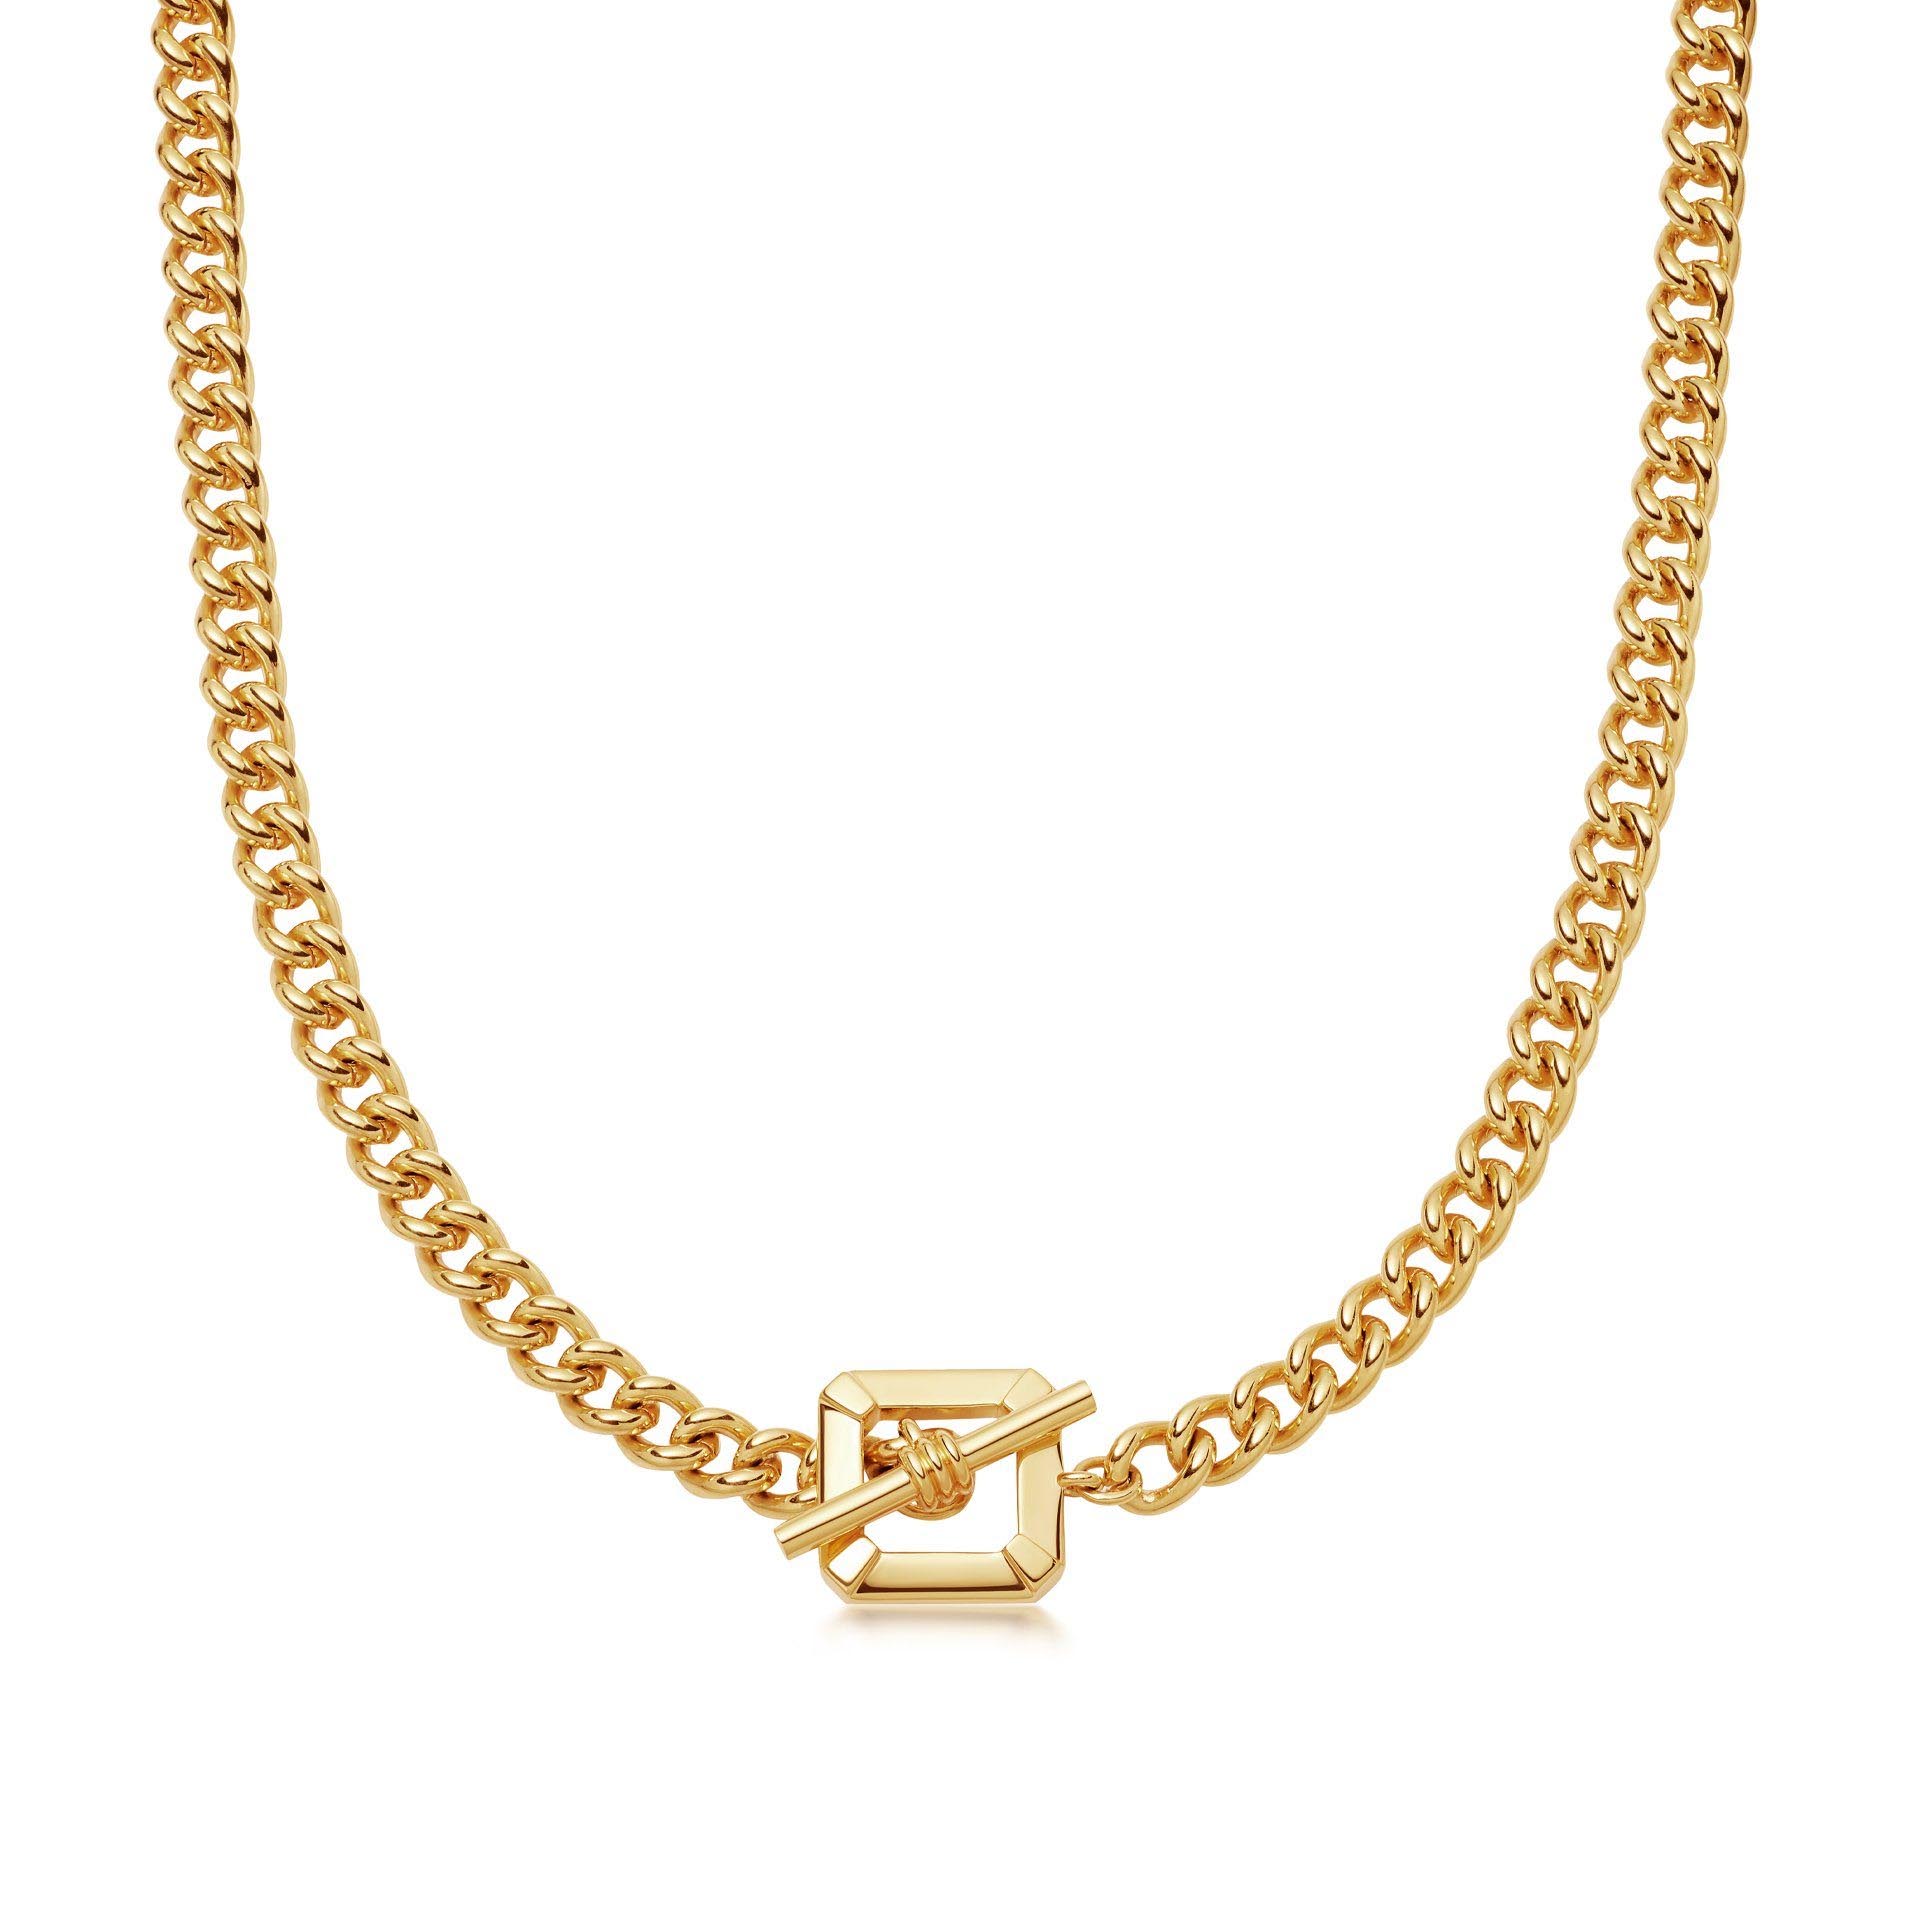 Atacado OEM / ODM joias OEM colar de joias francesas banhado a ouro 18 quilates em latão ou prata esterlina